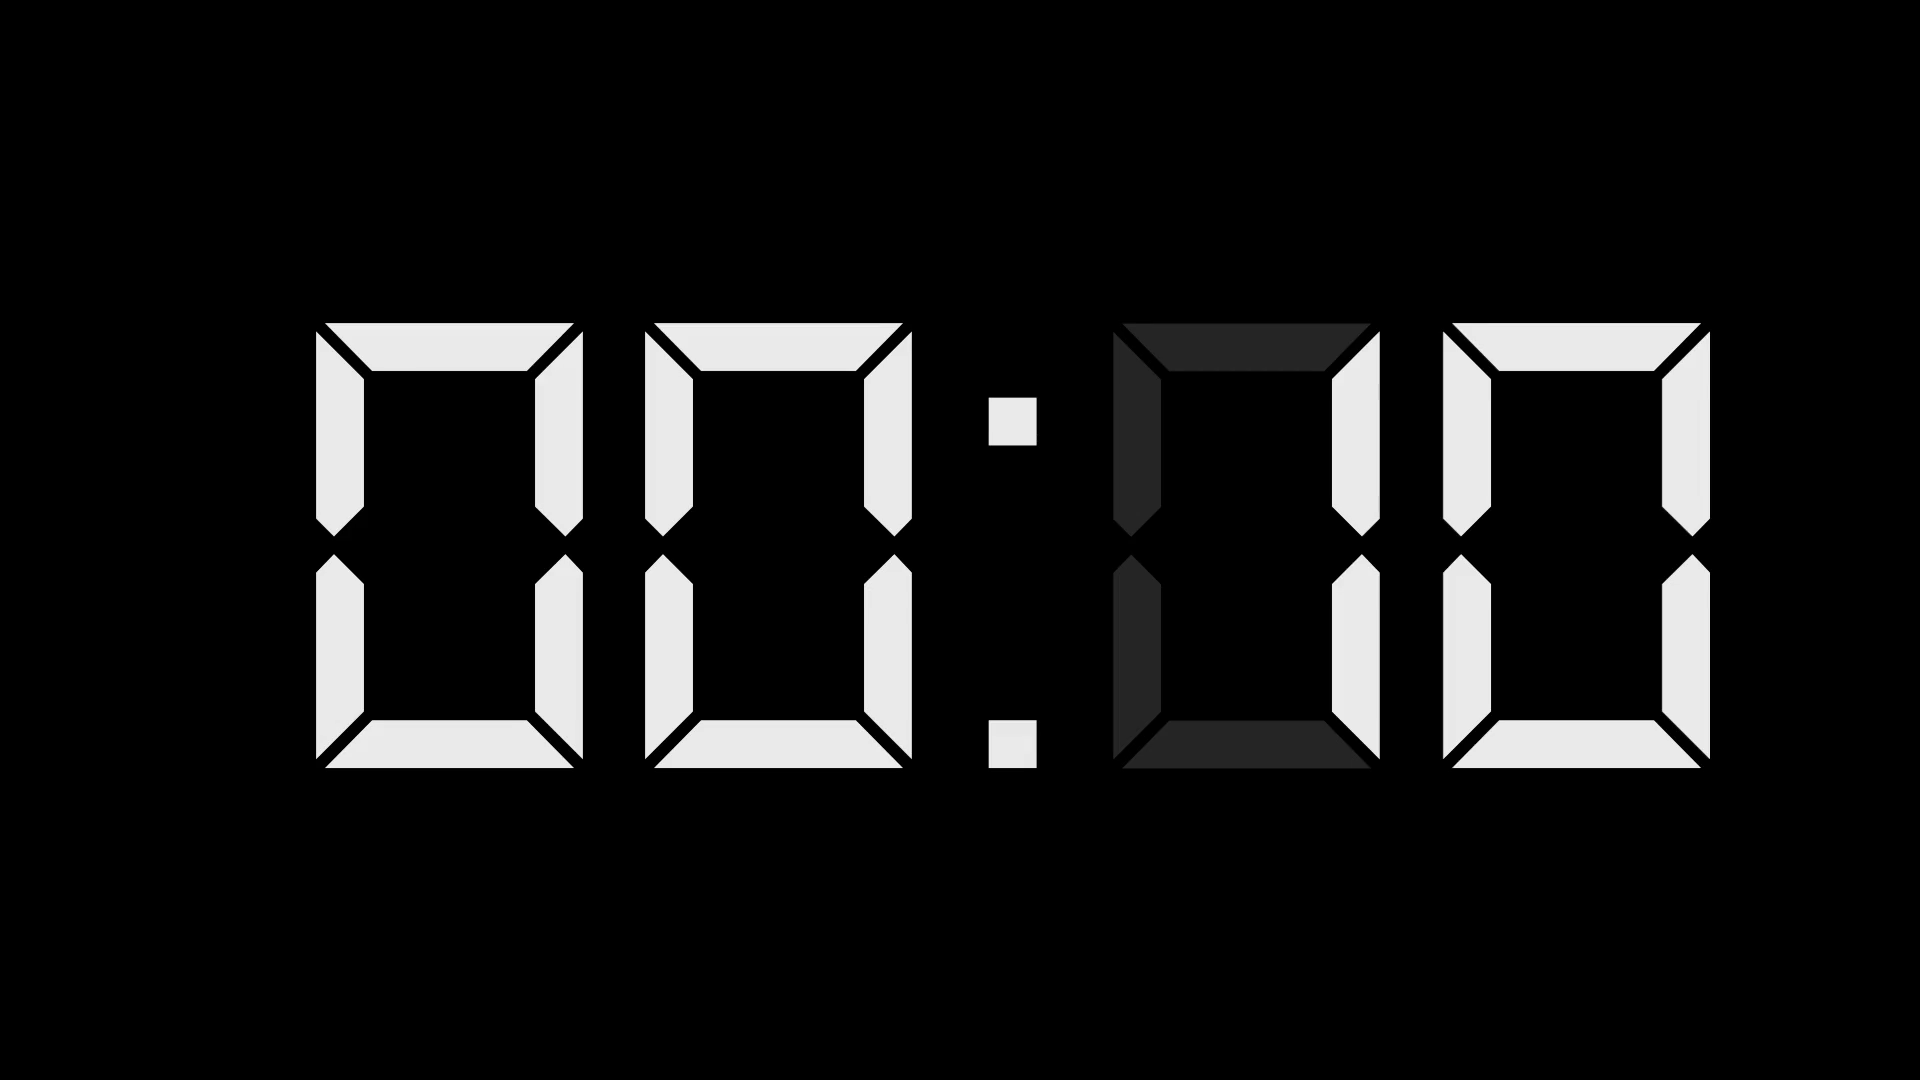 Оставшееся время 0 45. Цифры электронных часов. Циферблат электронных часов. Часы на черном фоне. Цифровые часы цифры.